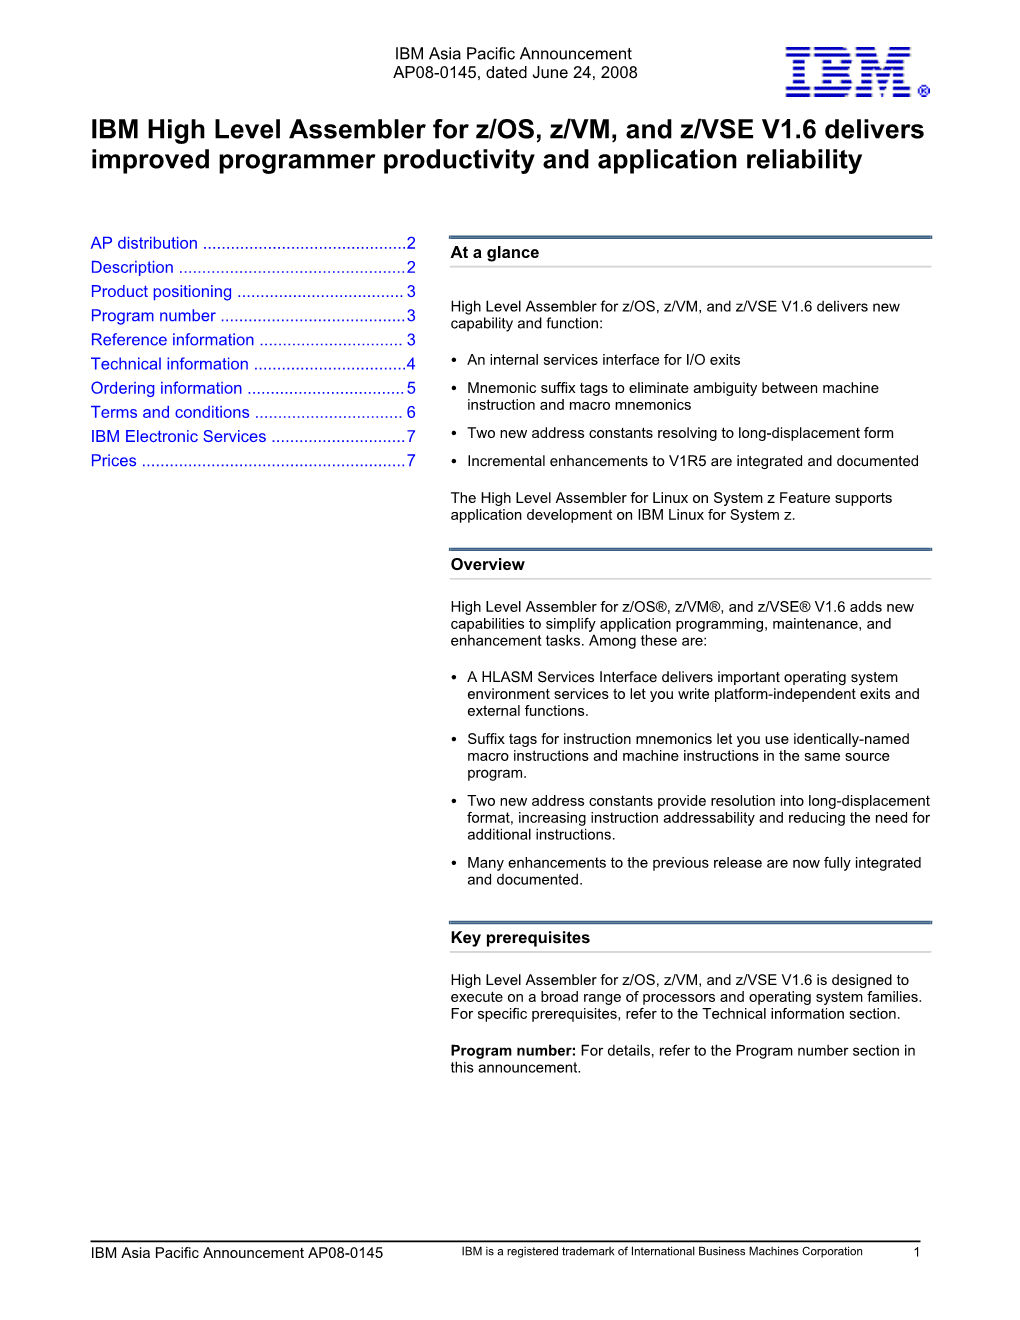 IBM High Level Assembler for Z/OS, Z/VM, and Z/VSE V1.6 Delivers Improved Programmer Productivity and Application Reliability